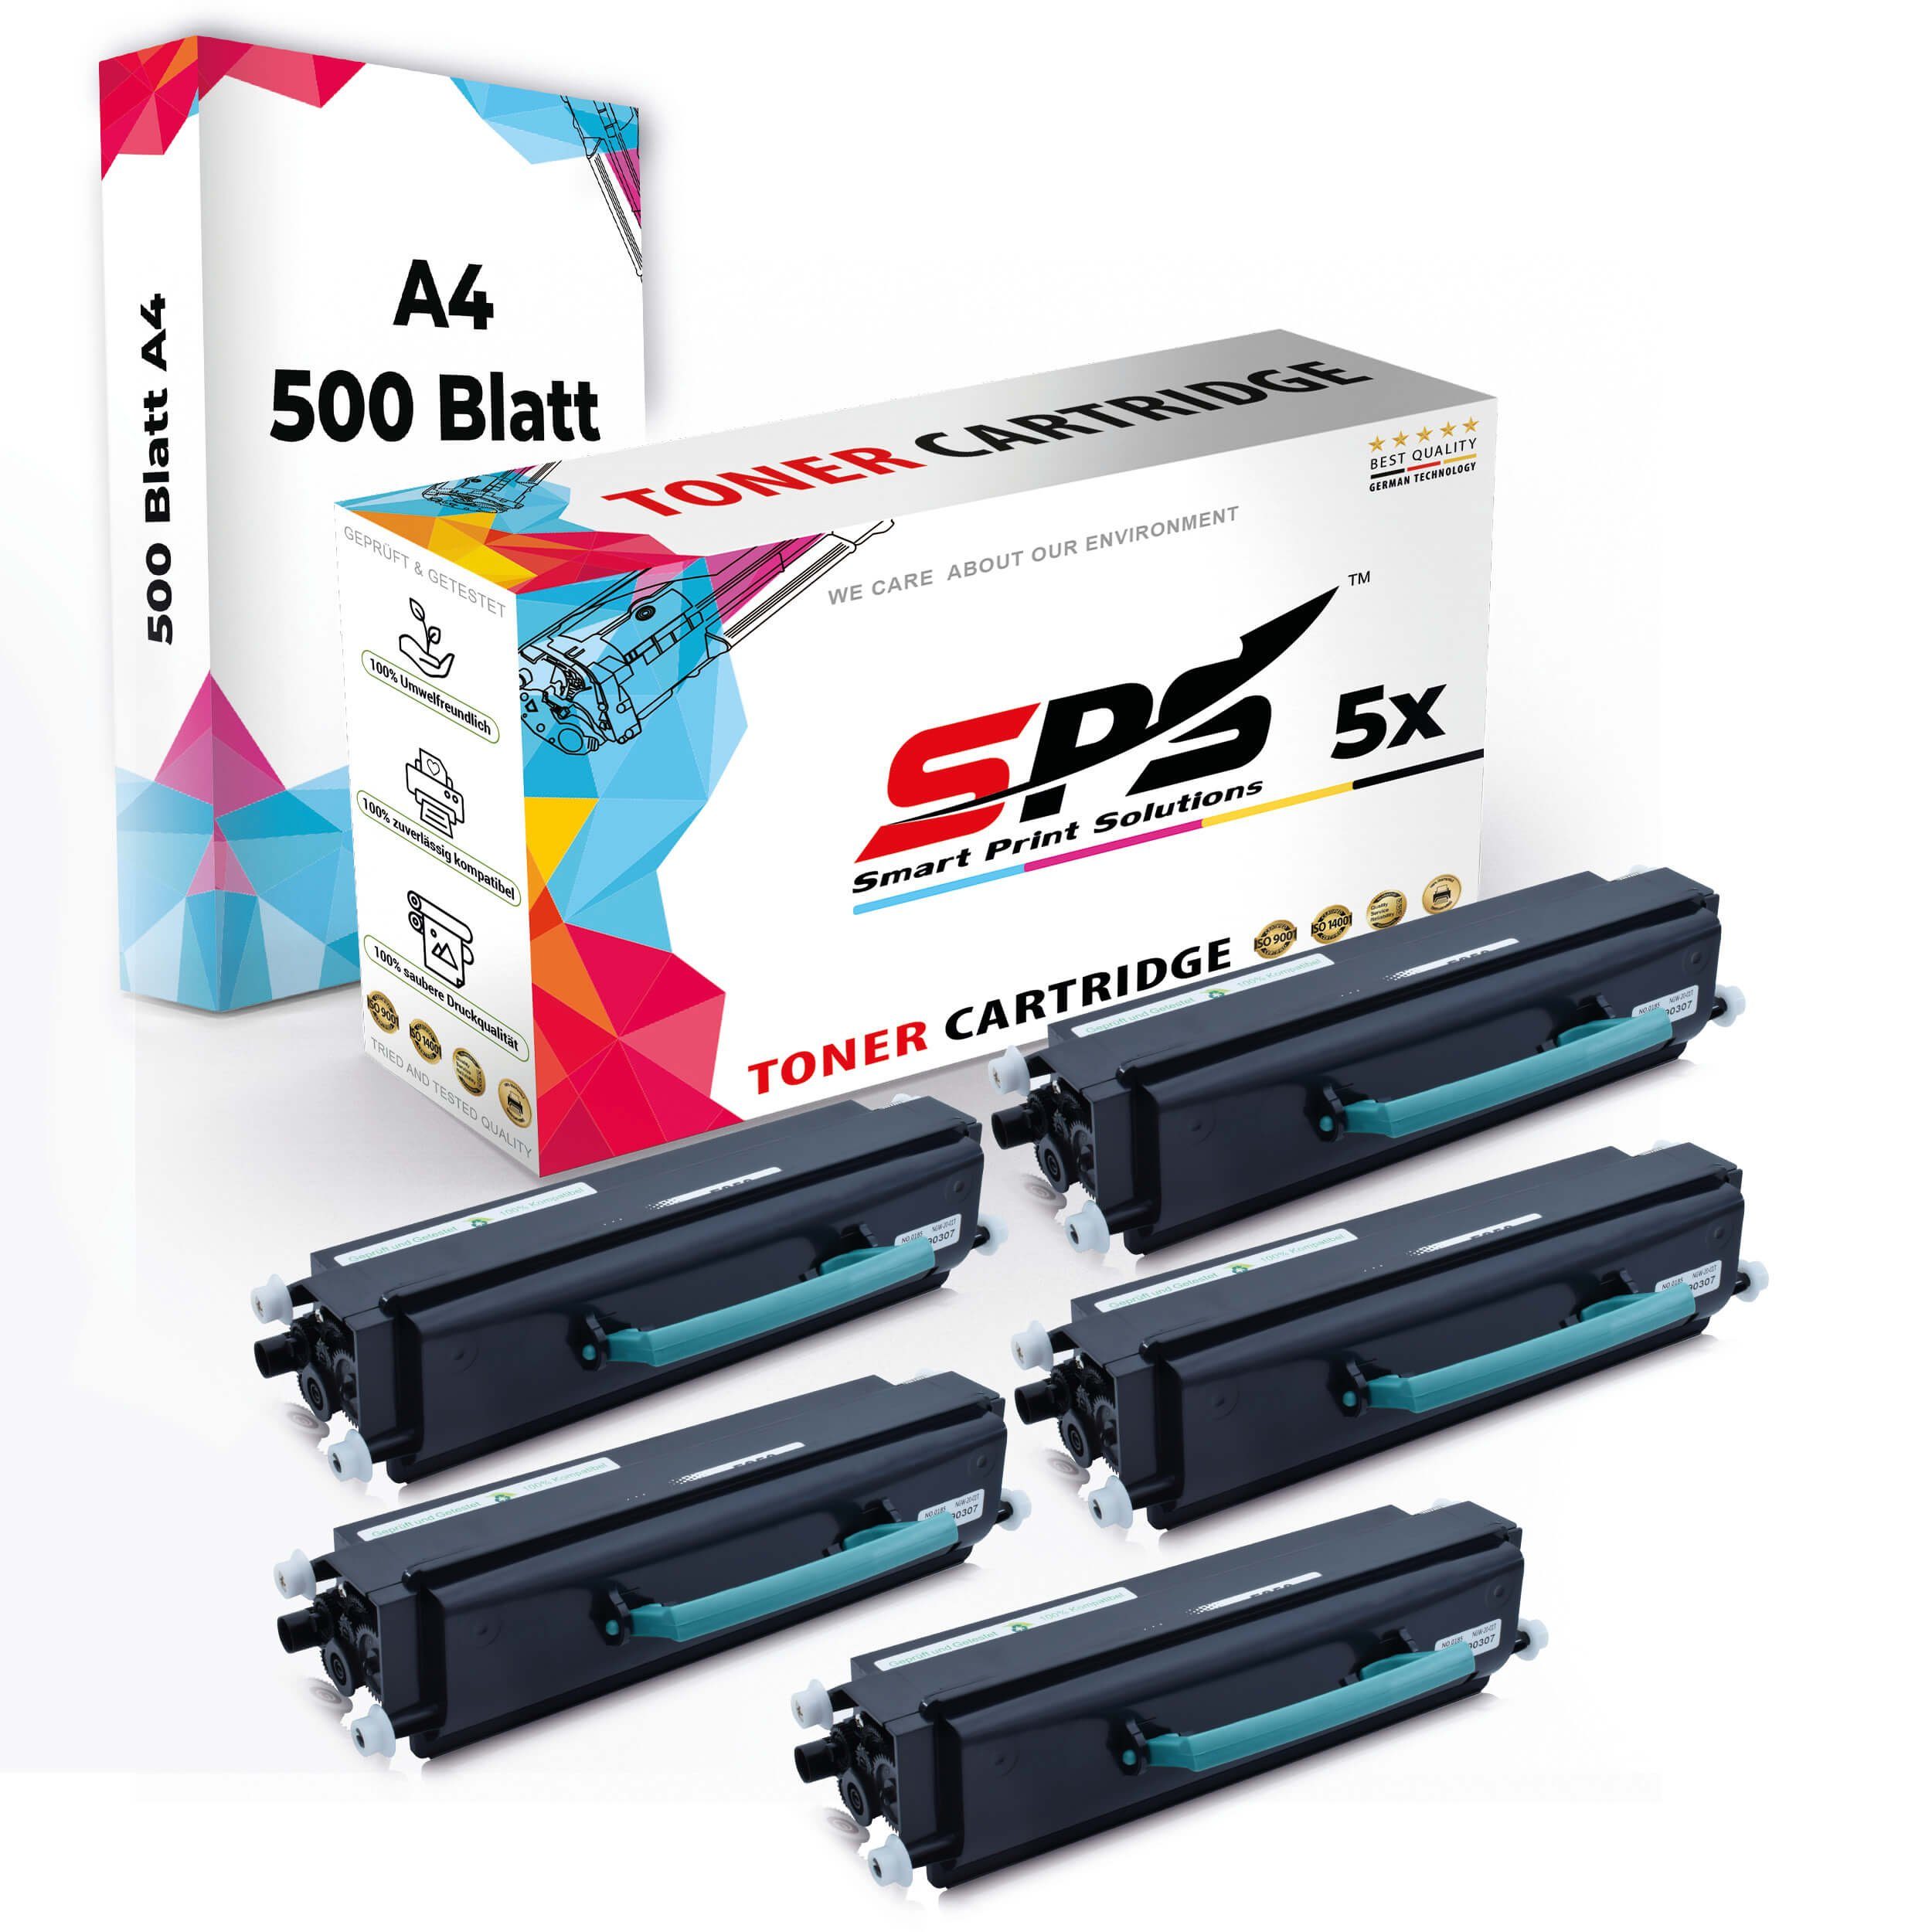 5x Kompatibel, A4 Pack, Set 5x Multipack SPS (5er + Druckerpapier) Toner,1x A4 Tonerkartusche Druckerpapier